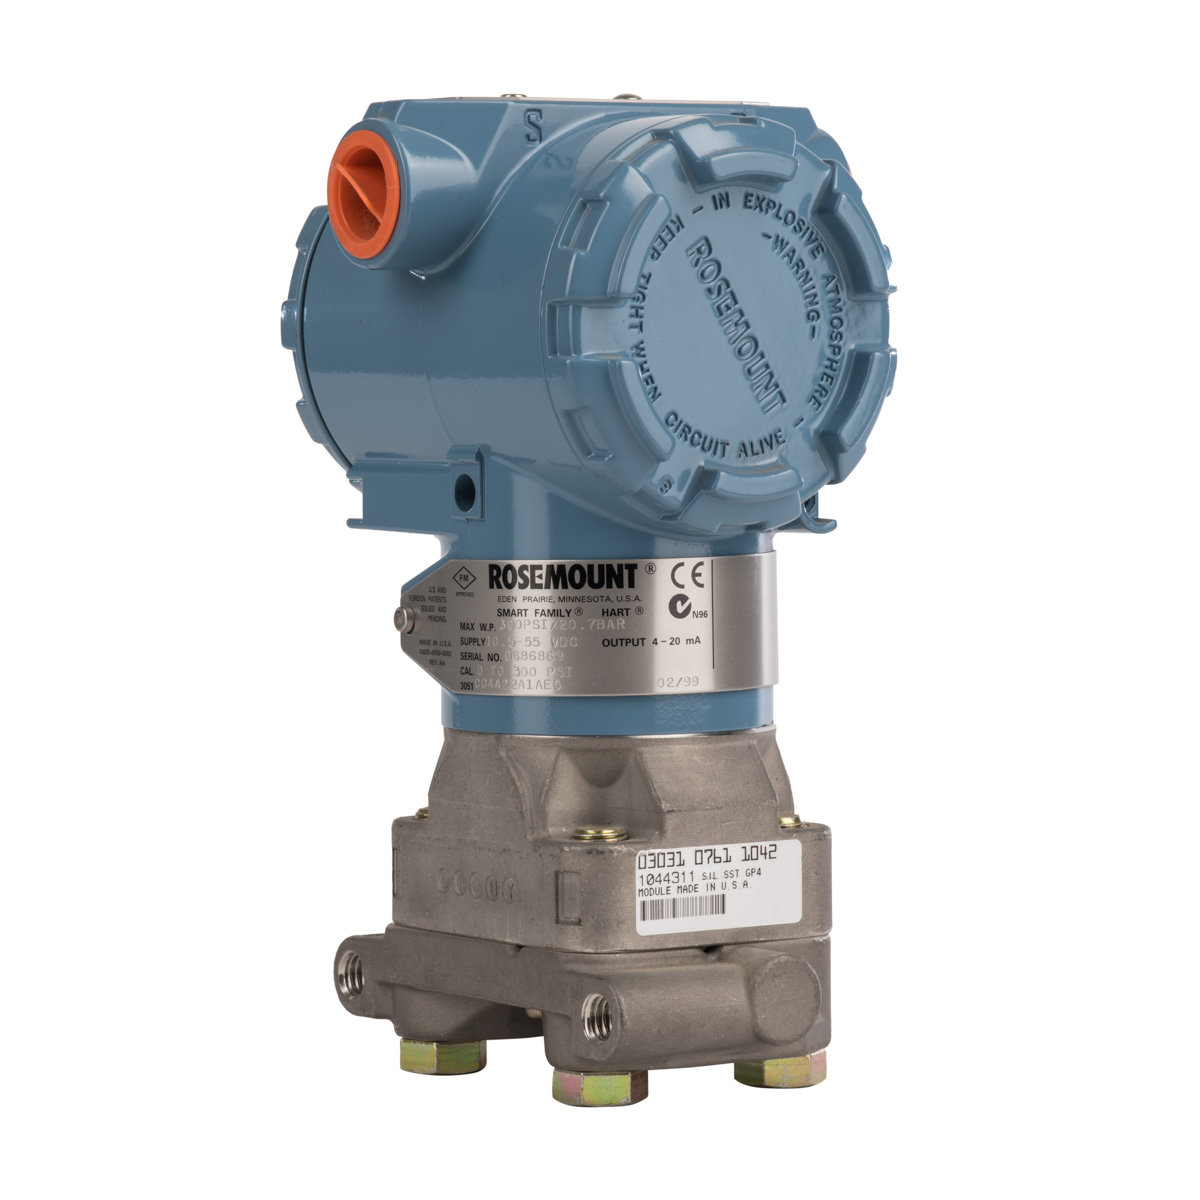 rosemount 3051 differential pressure transmitter manual